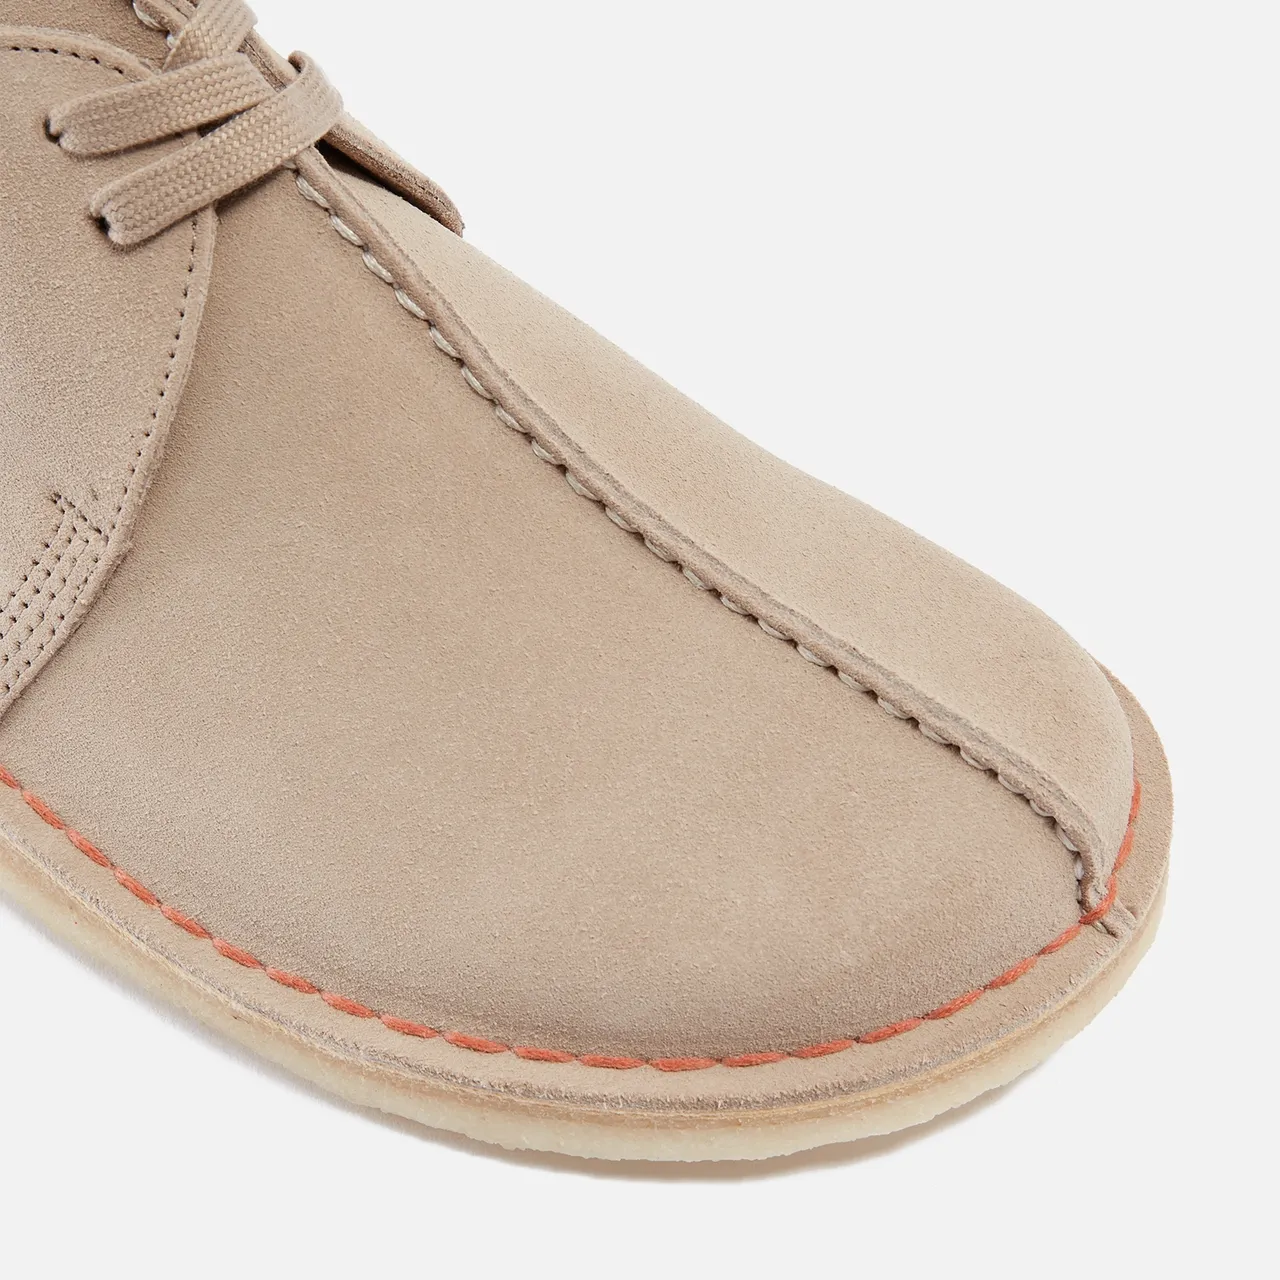 Clarks Originals Men’s Desert Trek Suede Shoes - UK